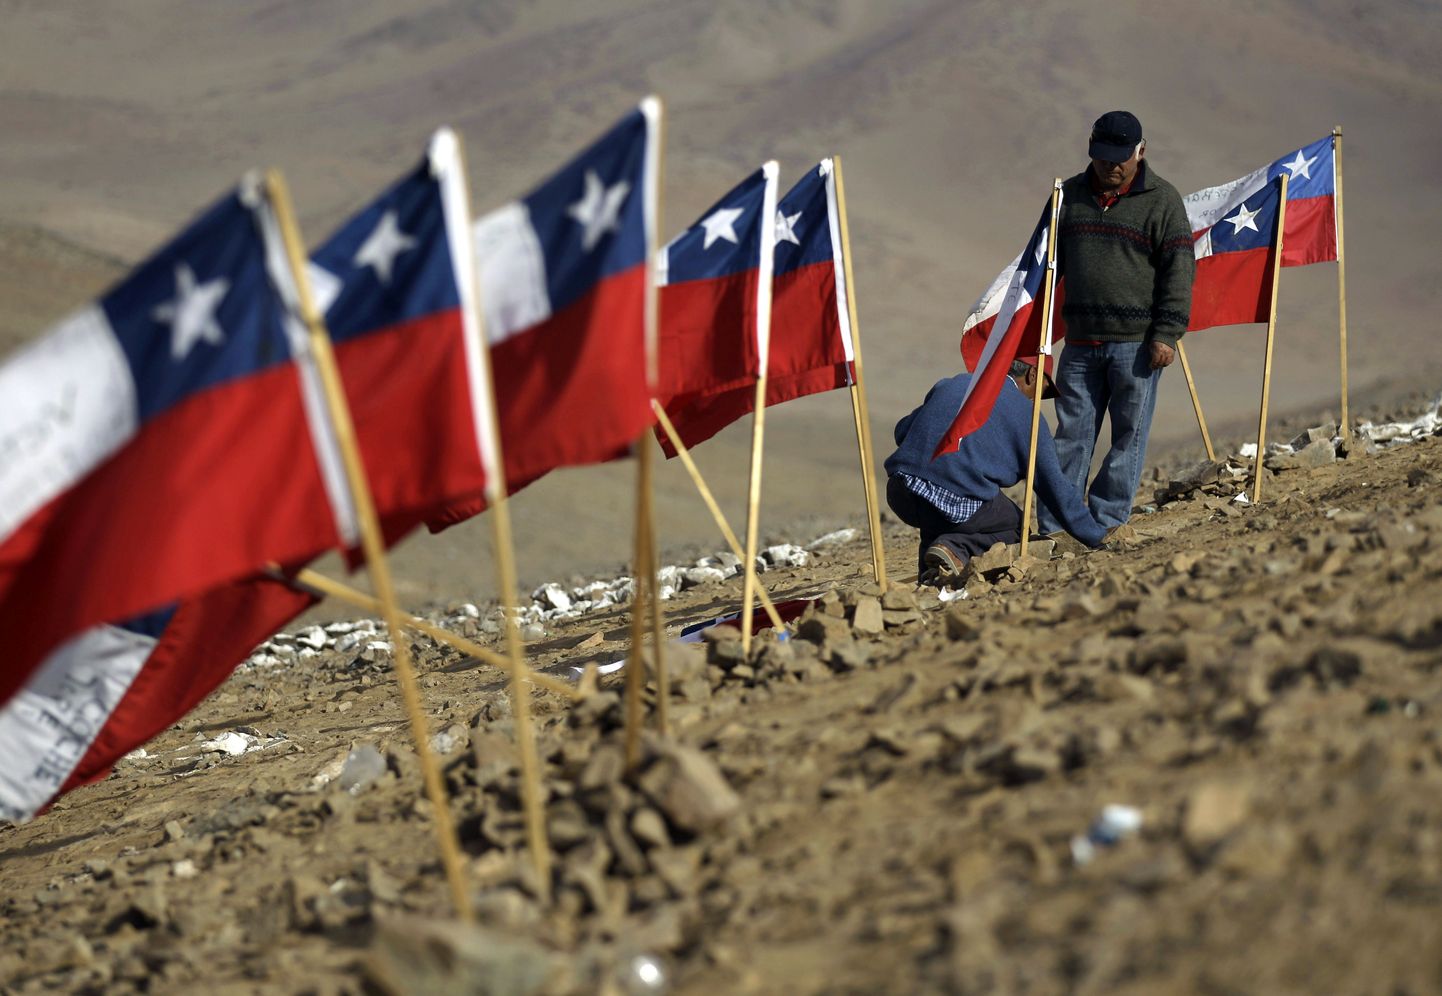 33 Tšiili lippu maa alla lõksu jäänud kaevurite nimedega. Meeste päästeoperatsioon võib kesta neli kuud.